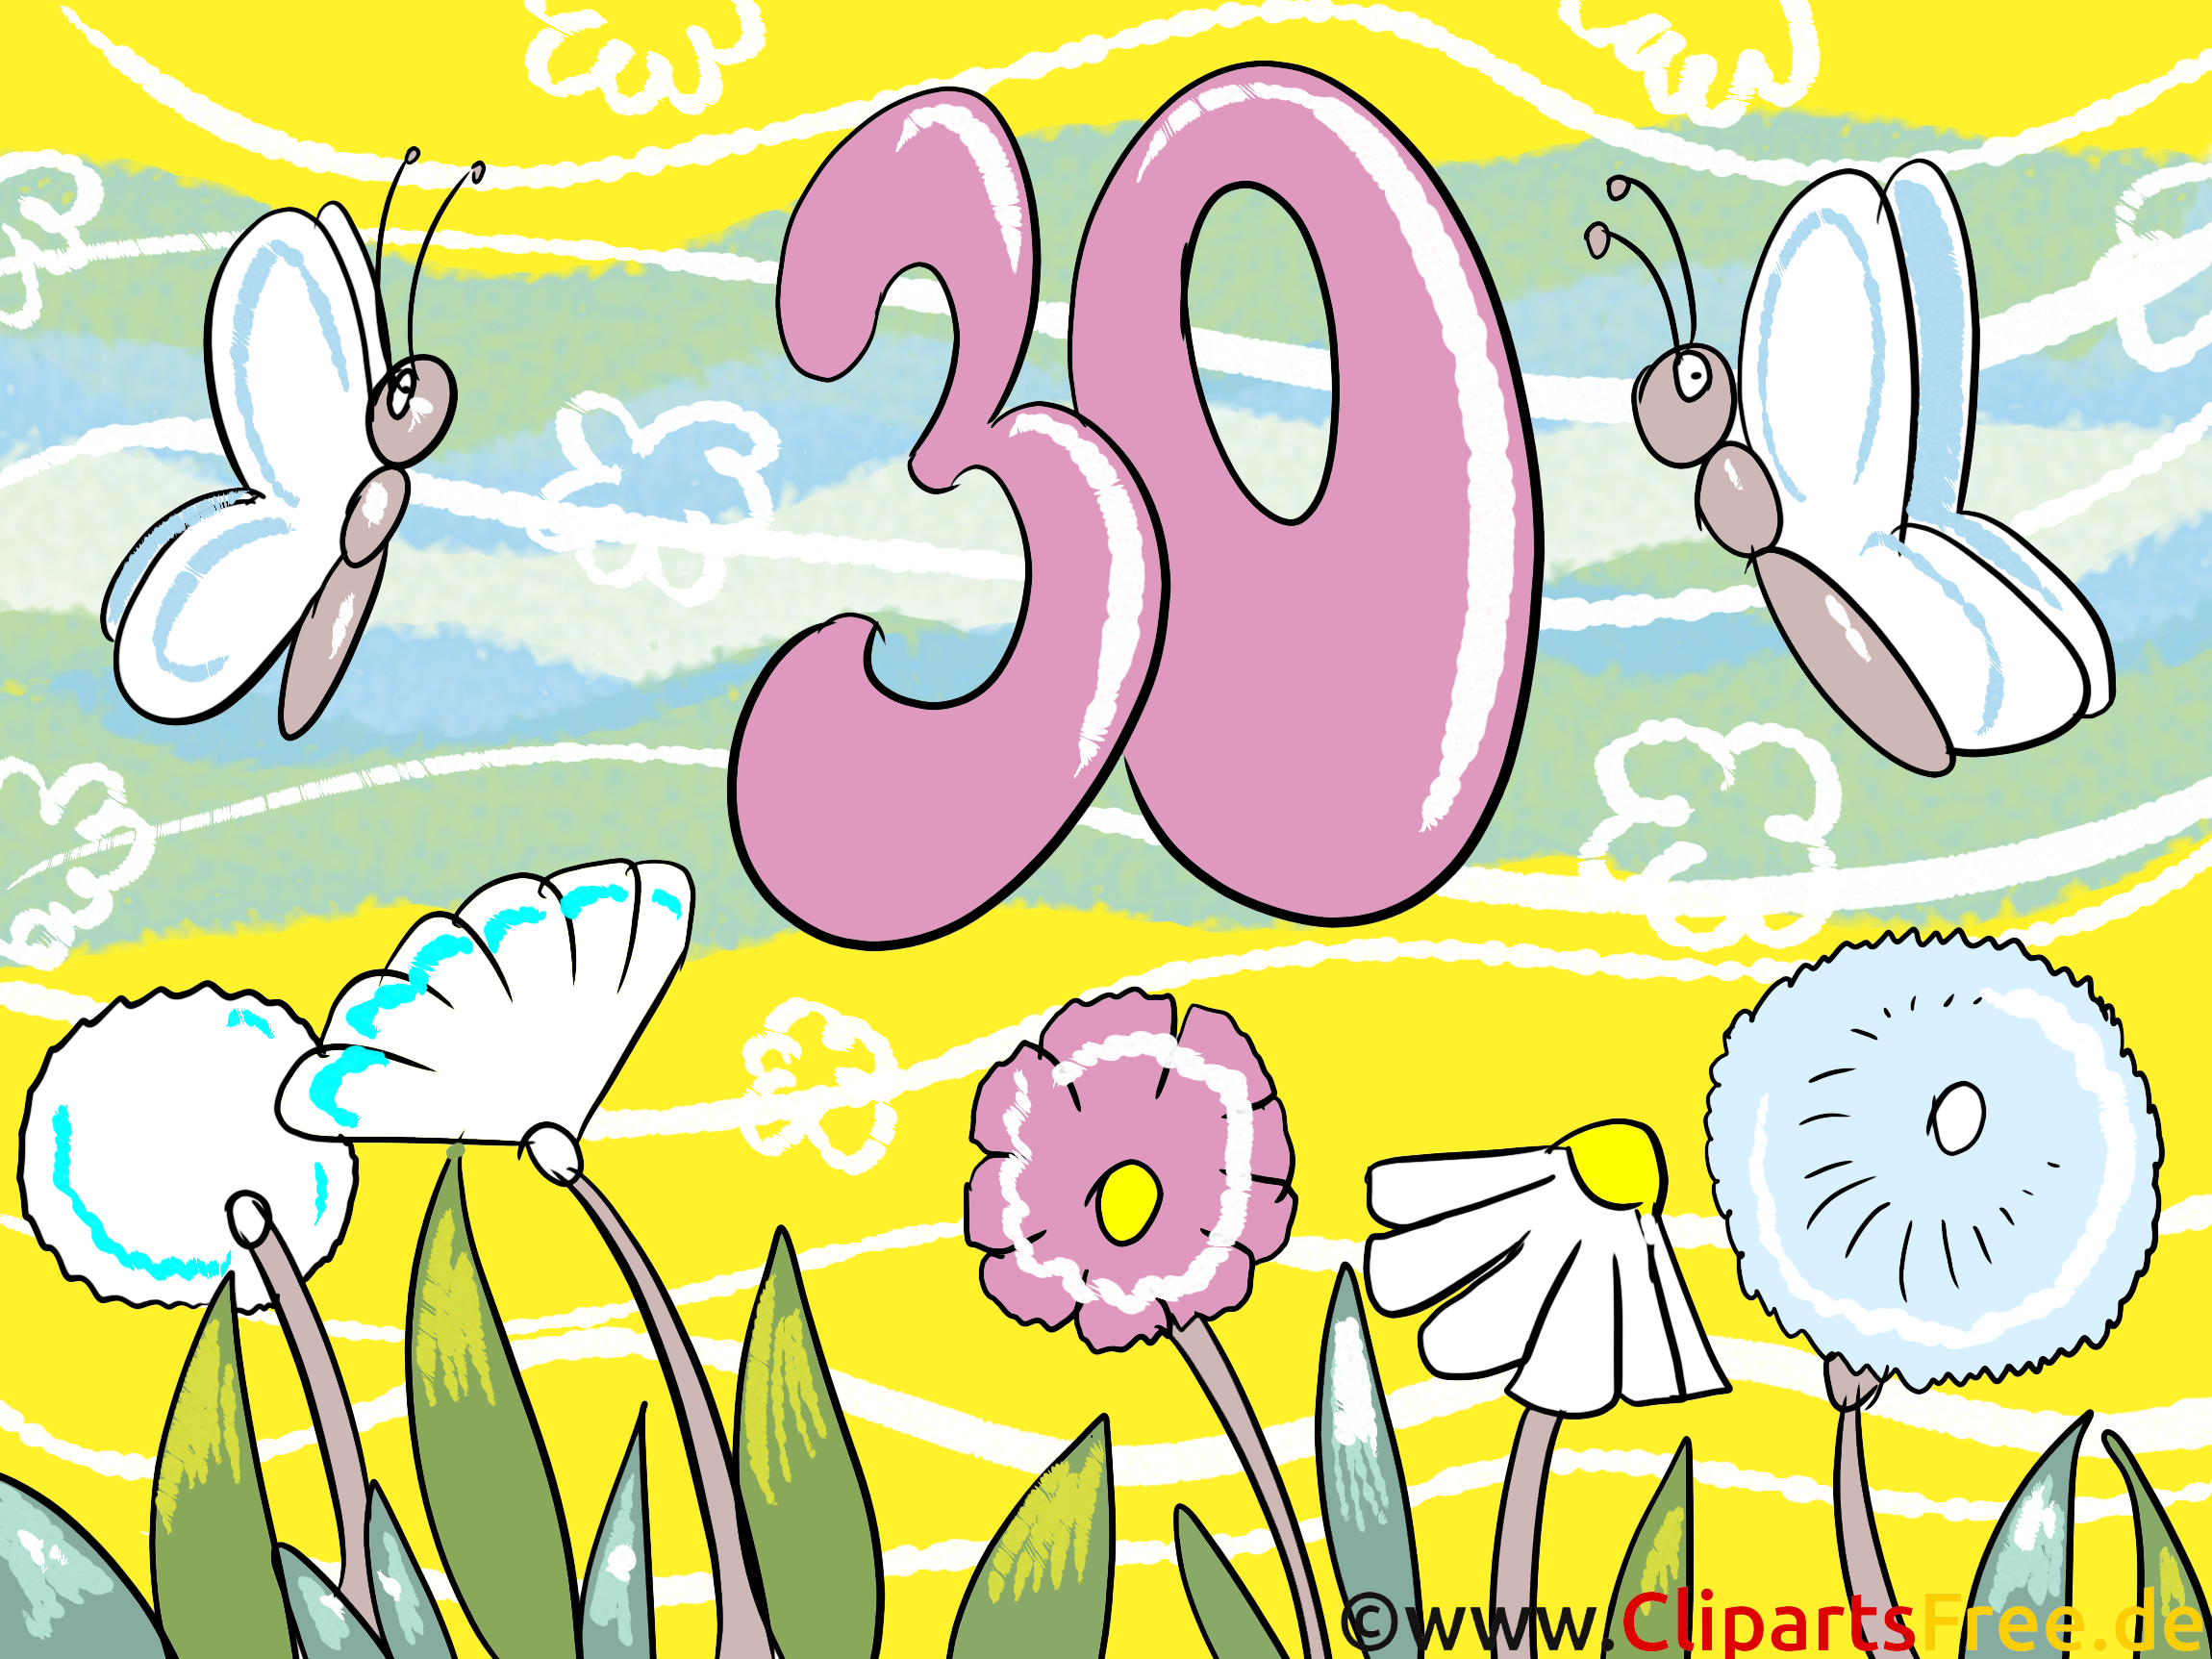 30 ans images – Anniversaire dessins gratuits